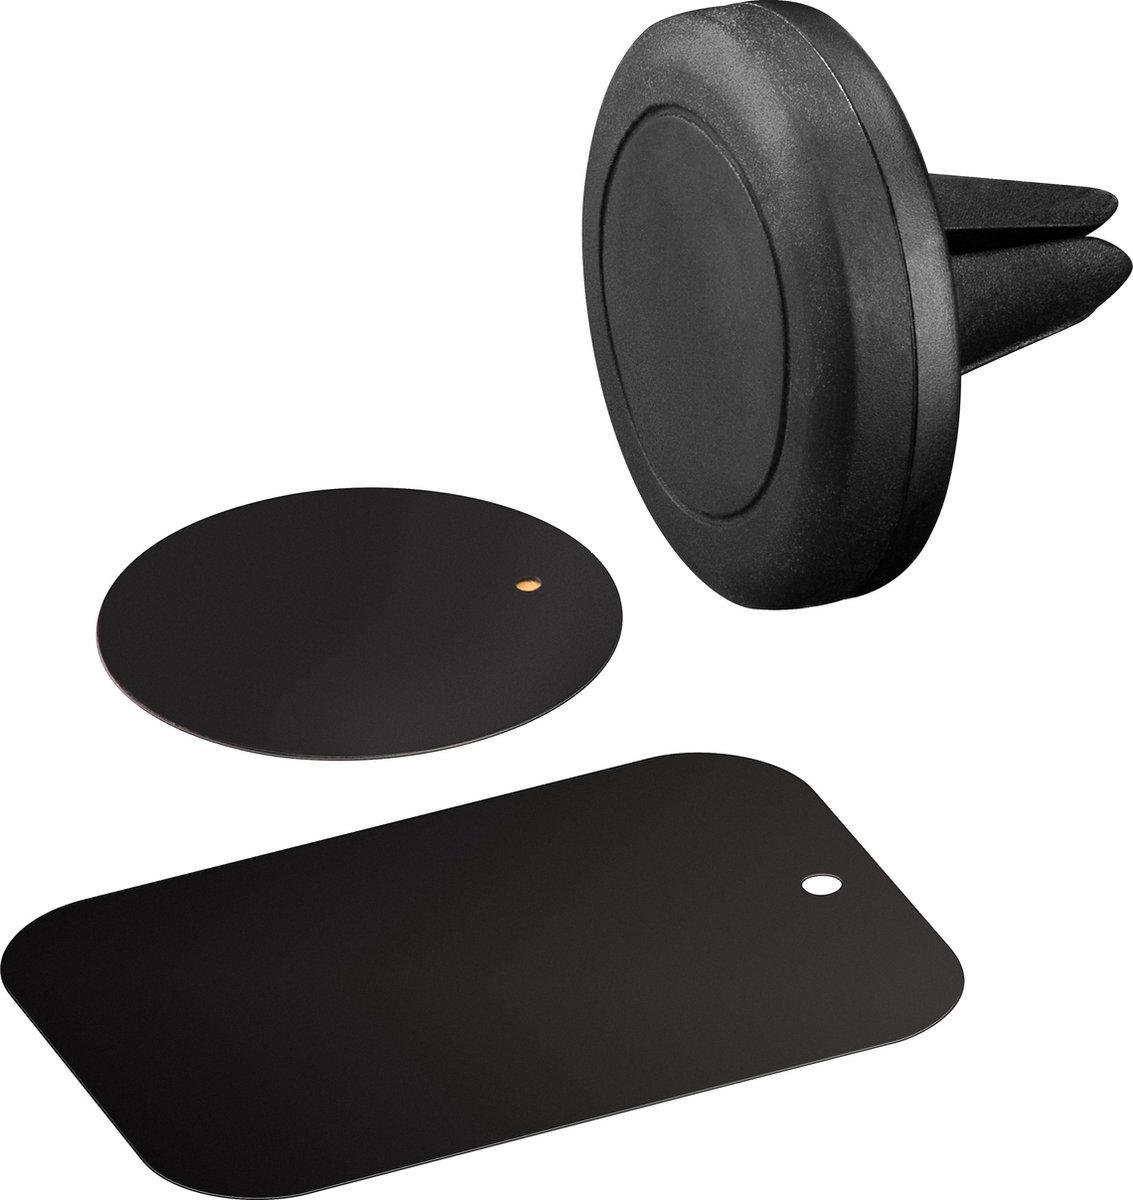 Goobay luchtrooster autohouder met magneet voor smartphones / zwart